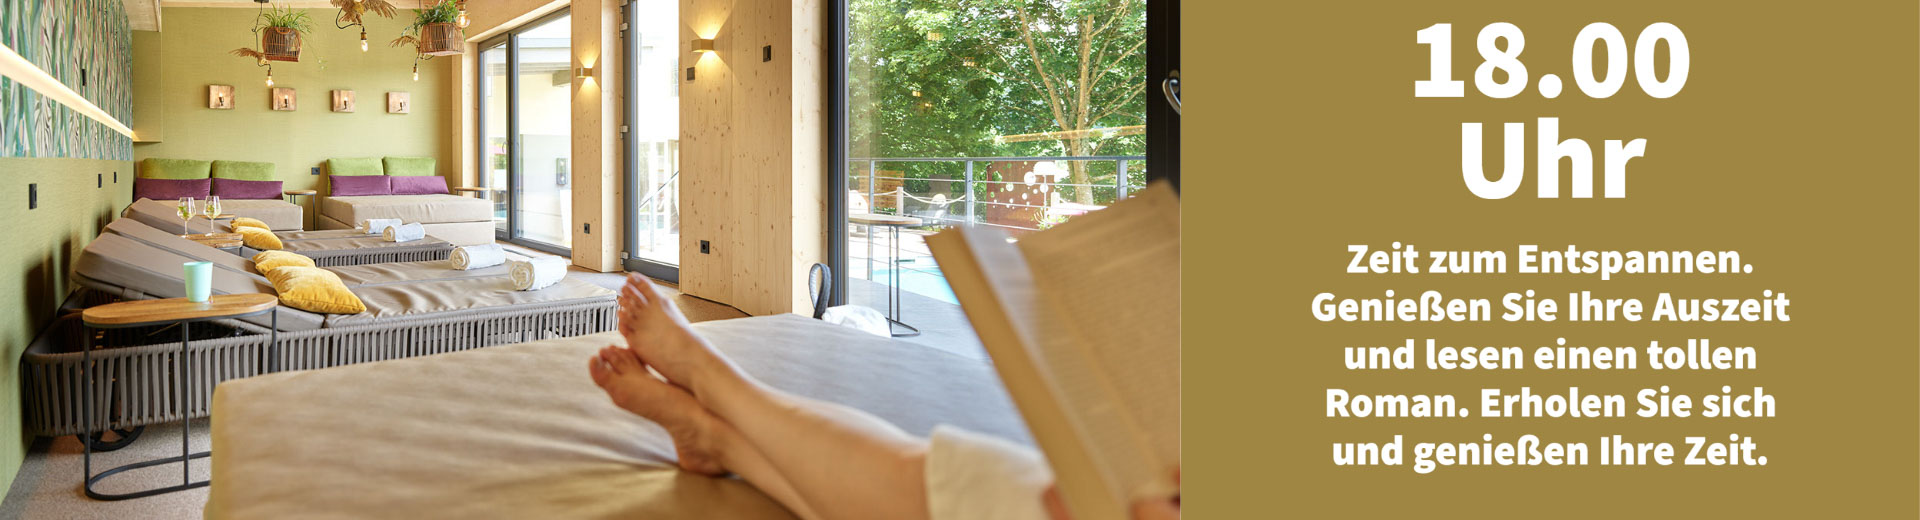 Ein Banner des Ein Tag im Erasmus im Hotel bei Saarburg zeigt eine Frau welche im Spabereich ein Buch liest